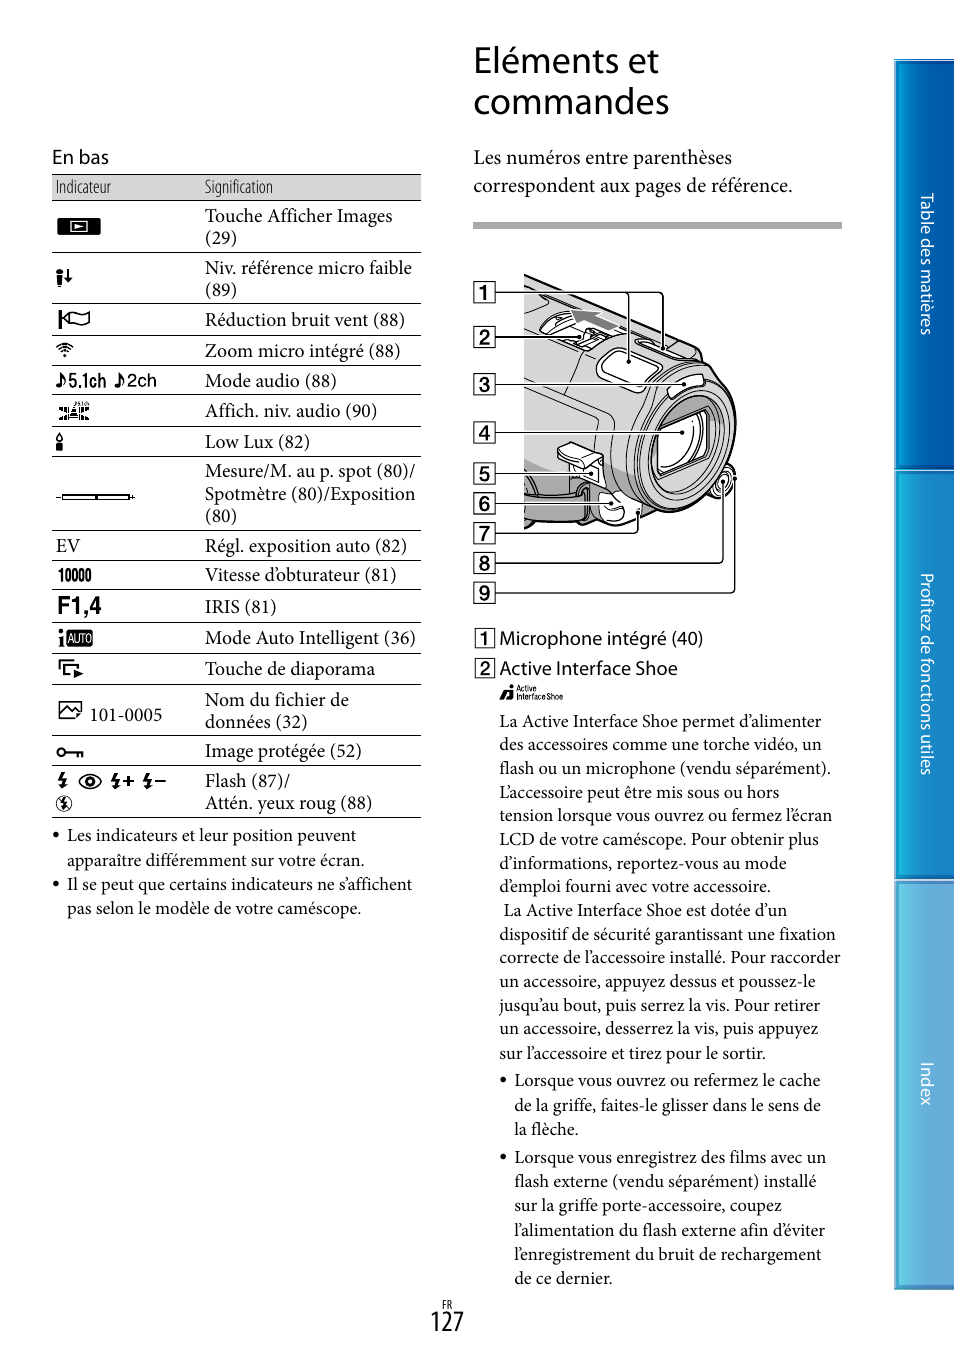 Eléments et commandes | Sony HDR-CX700VE Manuel d'utilisation | Page 127 / 134